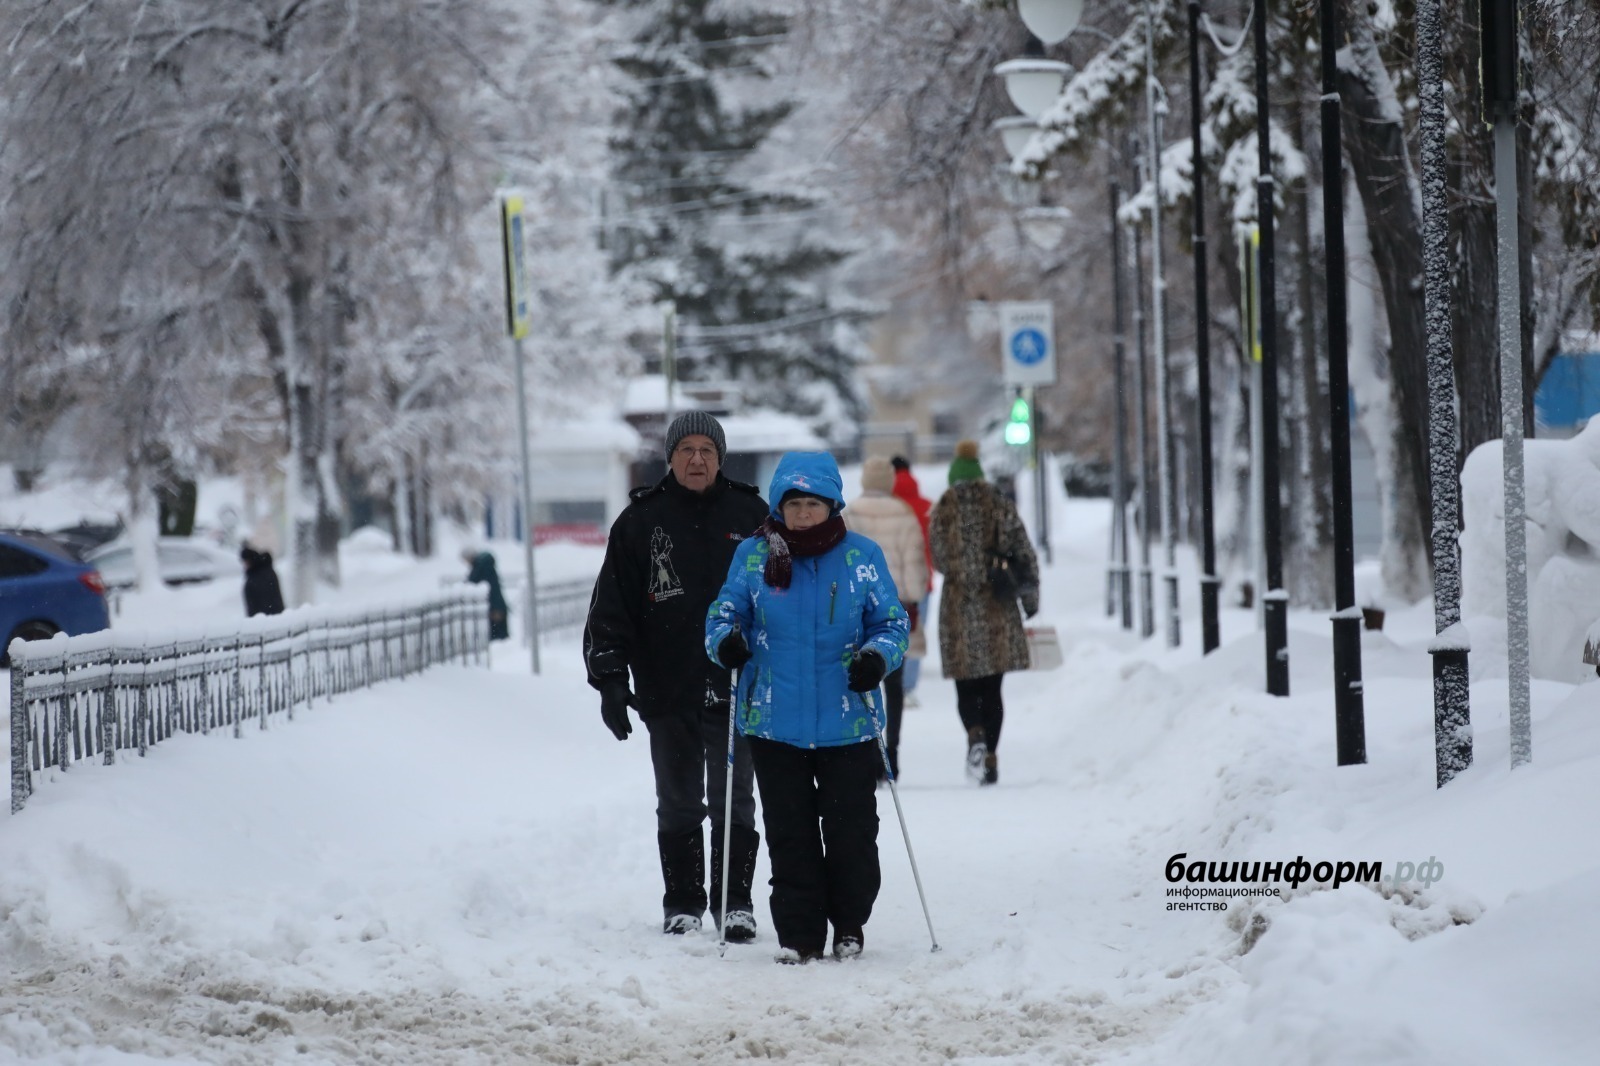 Среднестатистические значения превысила ожидаемая продолжительность жизни в Башкортостане